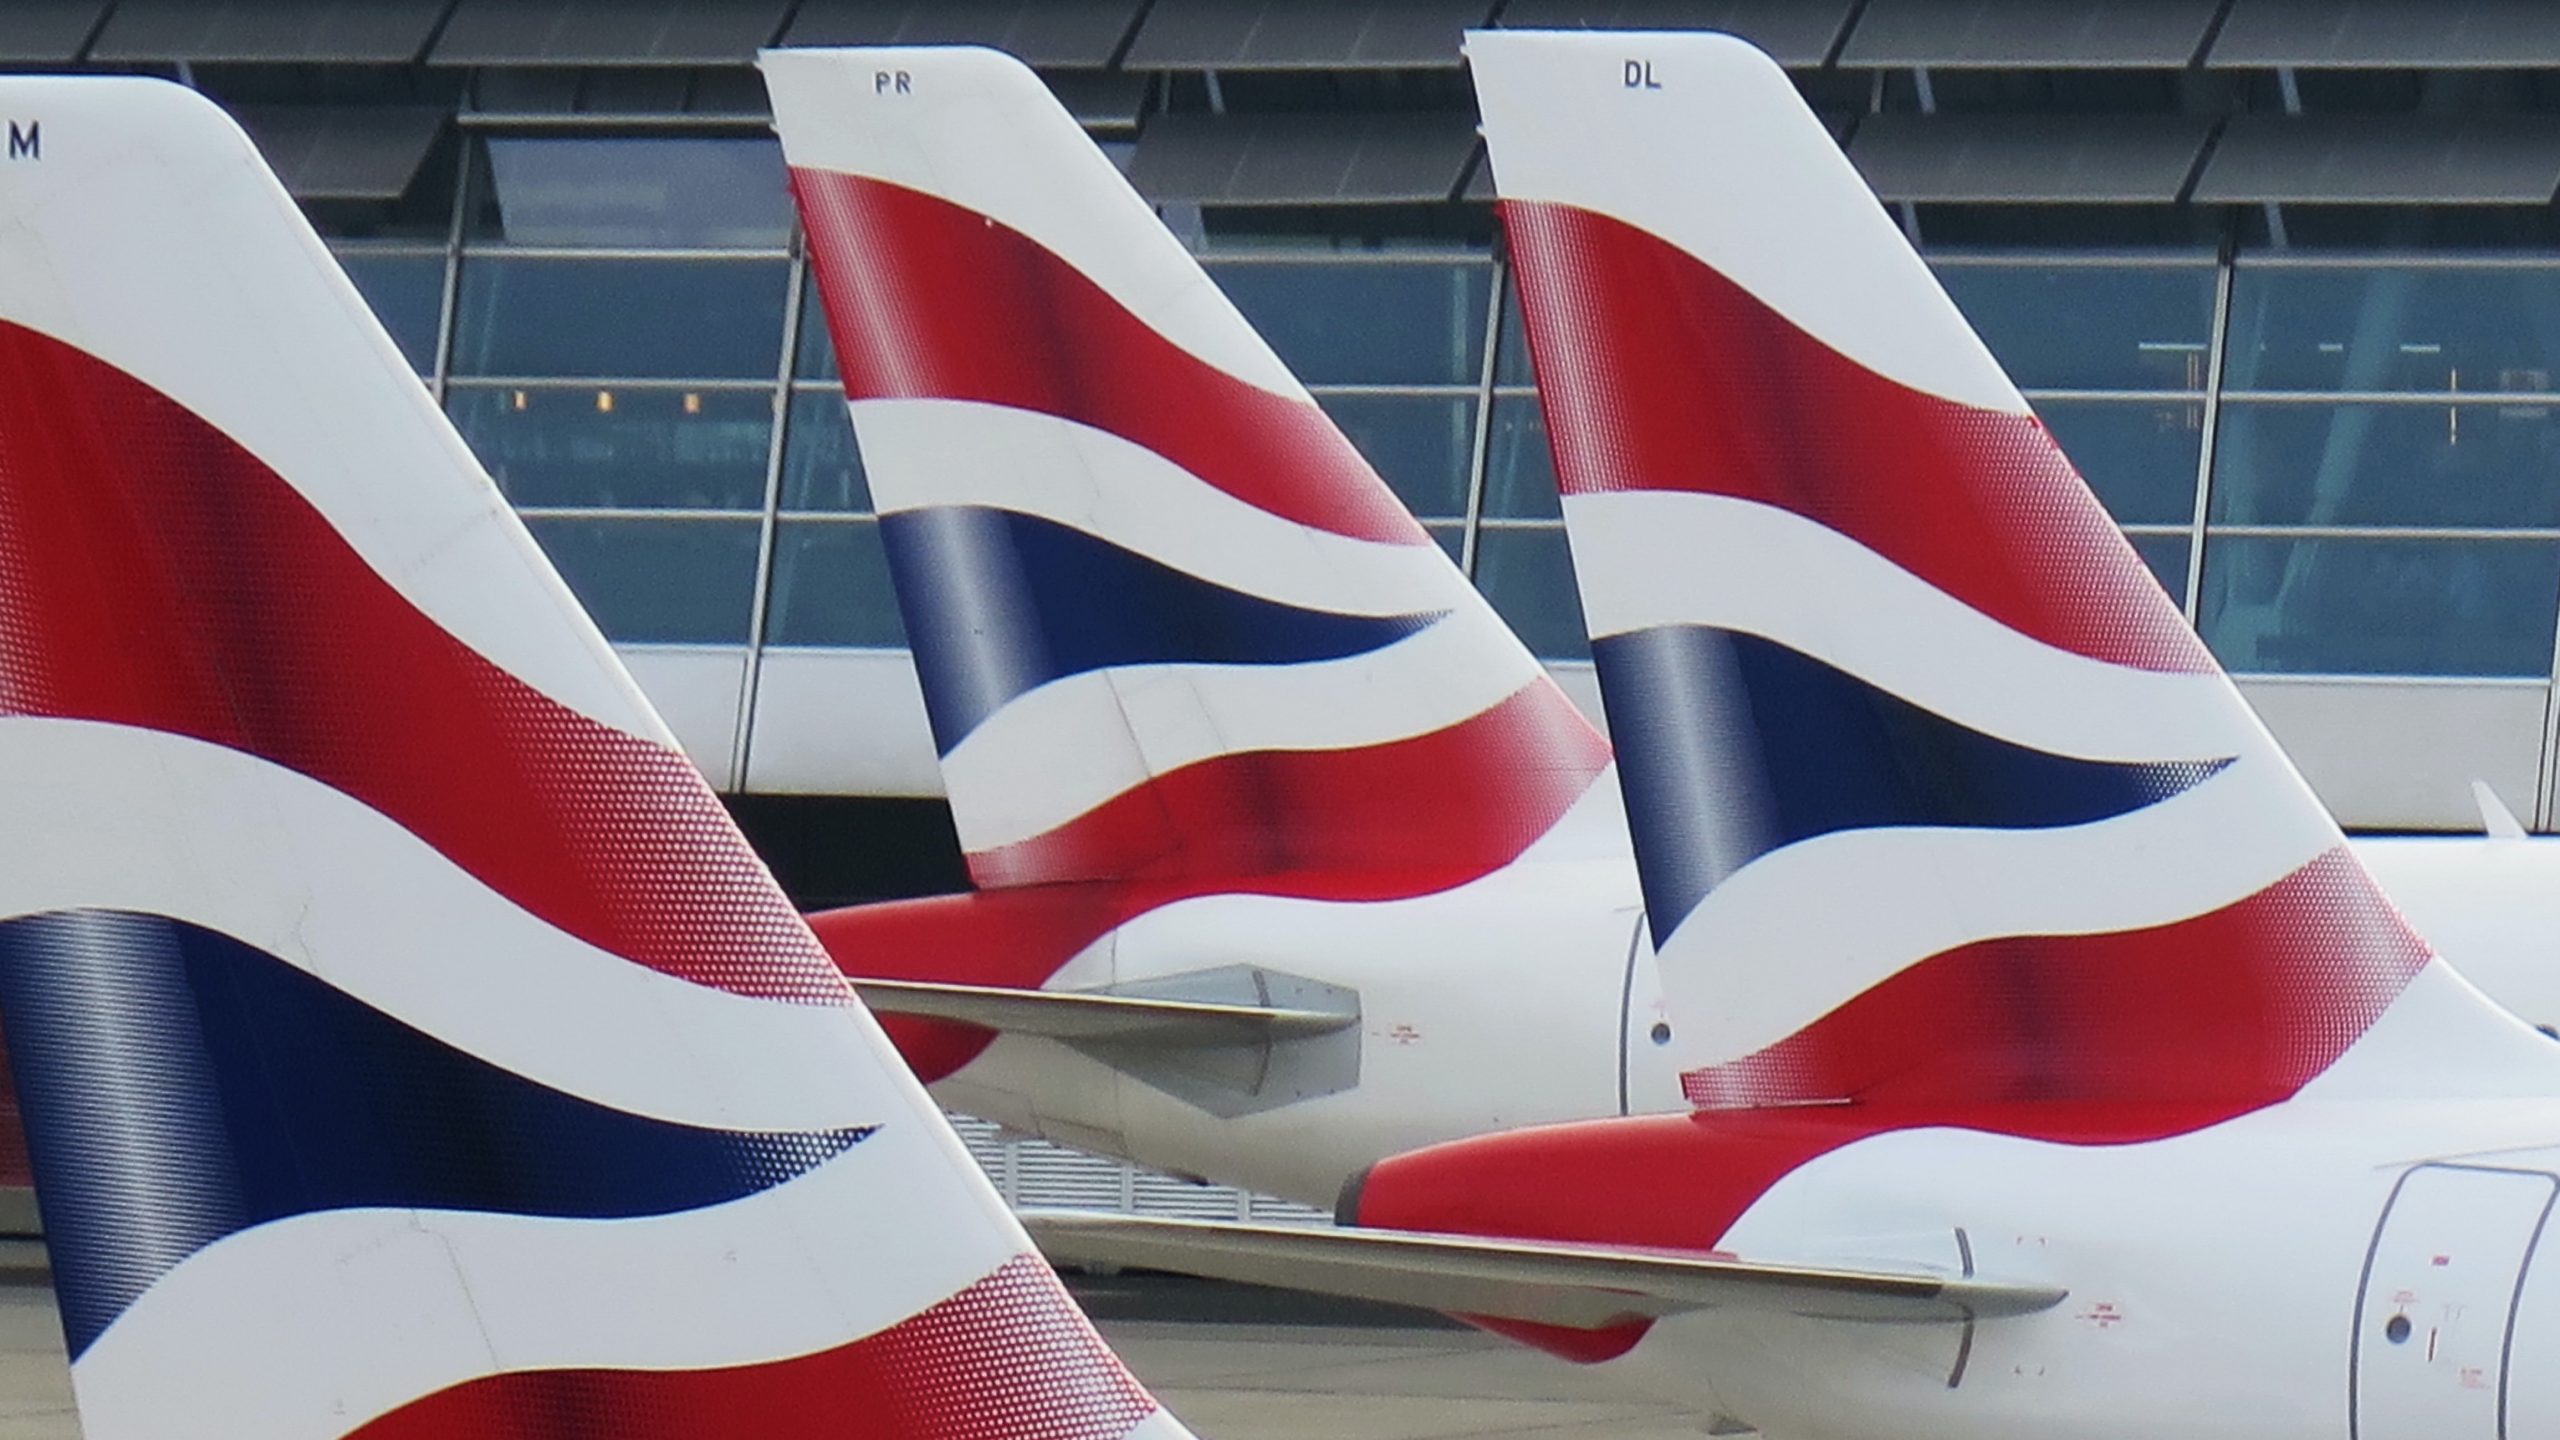 Η British Airways αντισταθμίζει τα στοιχήματά της με υποστήριξη για δύο διαφορετικά διαβατήρια ψηφιακού εμβολιασμού